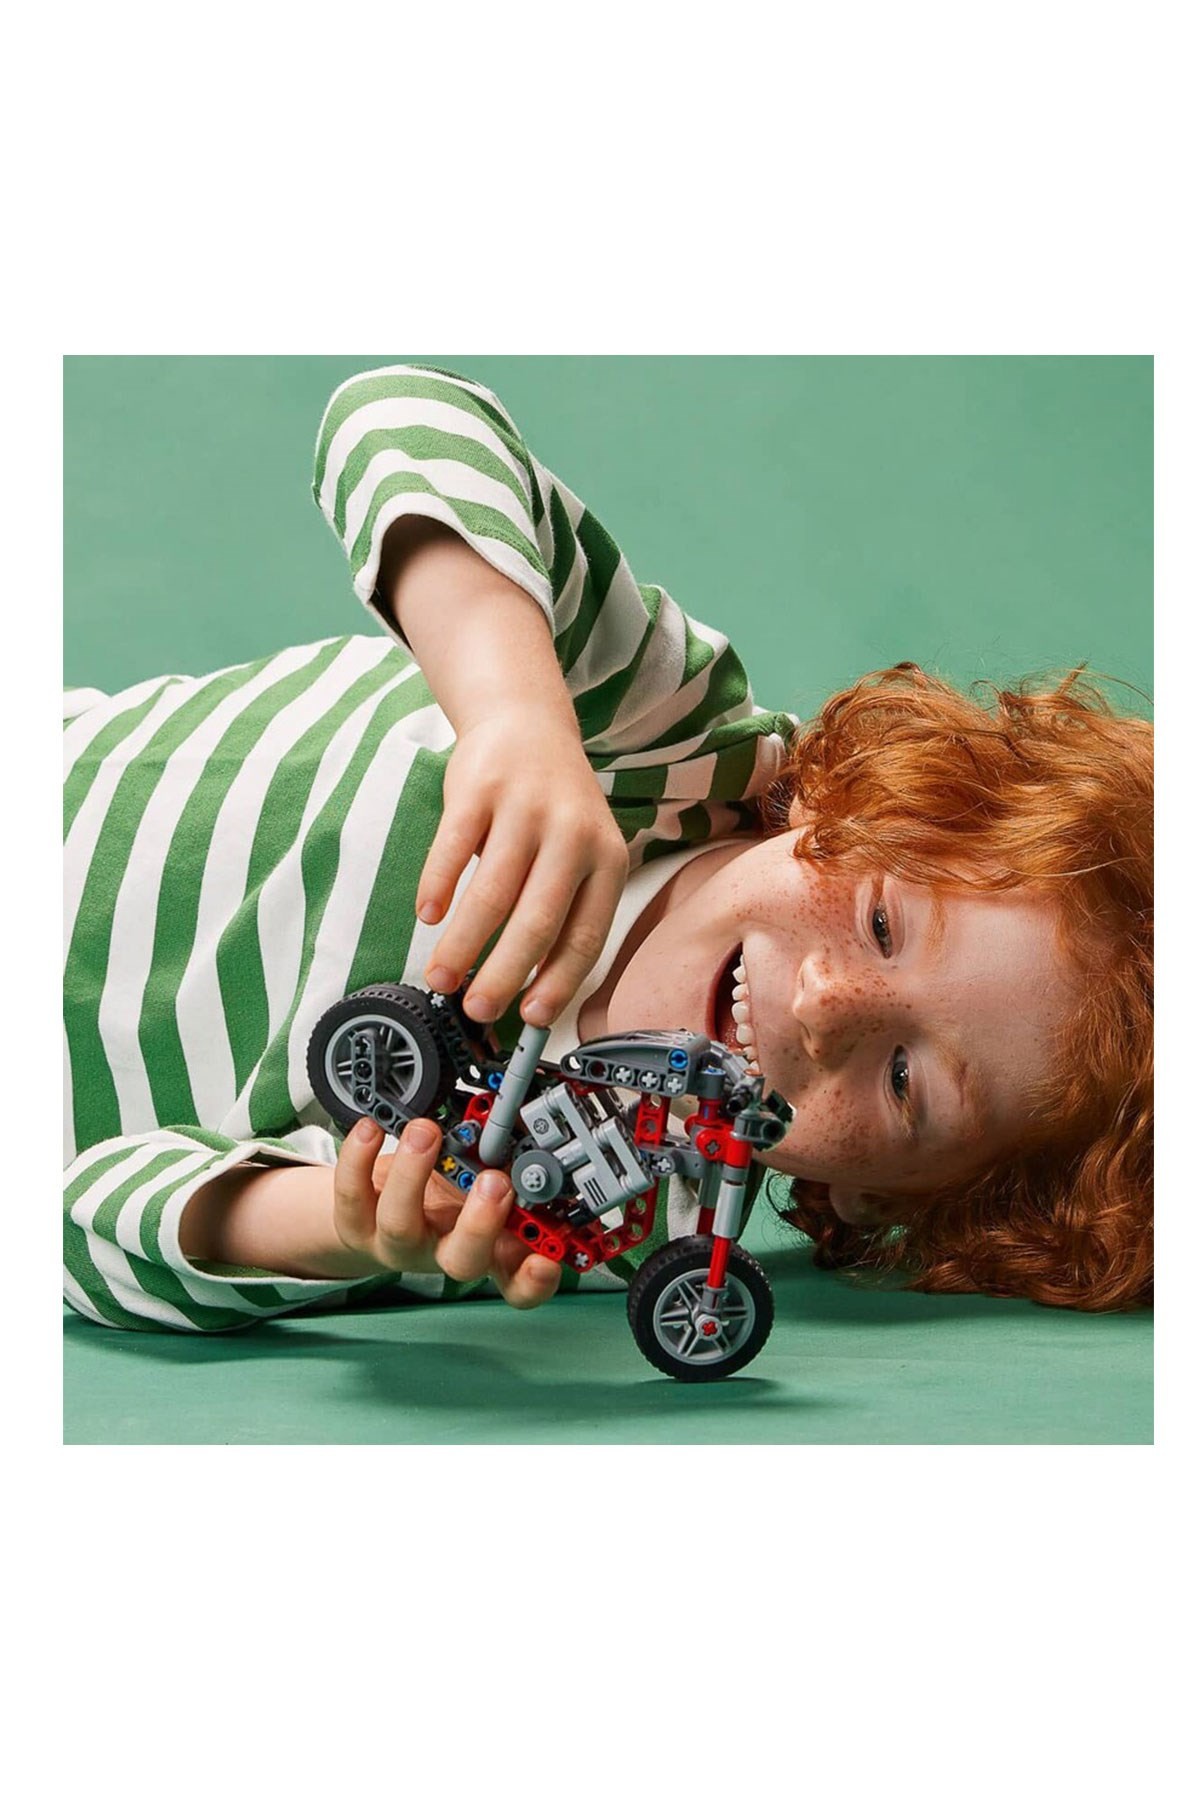 Lego Technic Motosiklet